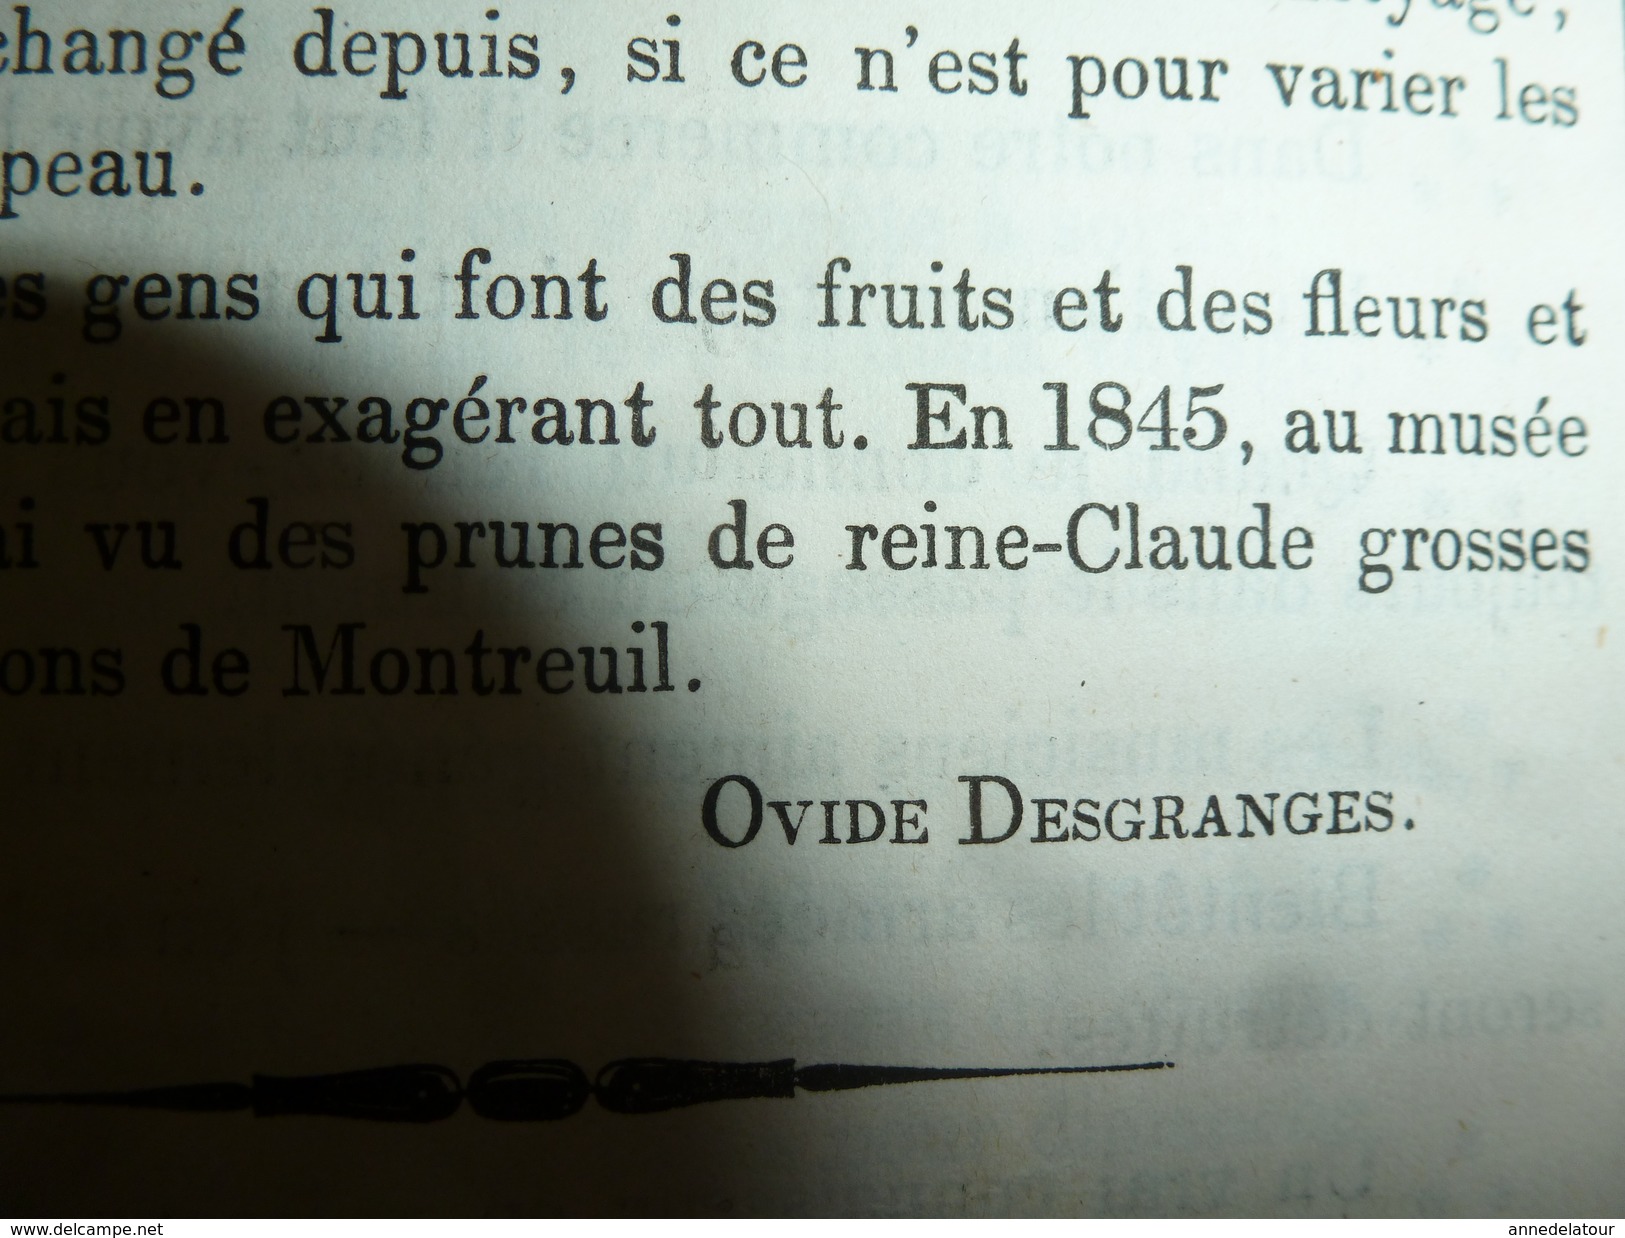 1855 Gravures issues du Journal pour Rire : HISTOIRE D'UN PROJET DE FEMME; par  Valentin;Nos TROUPIERS par Randonesberg